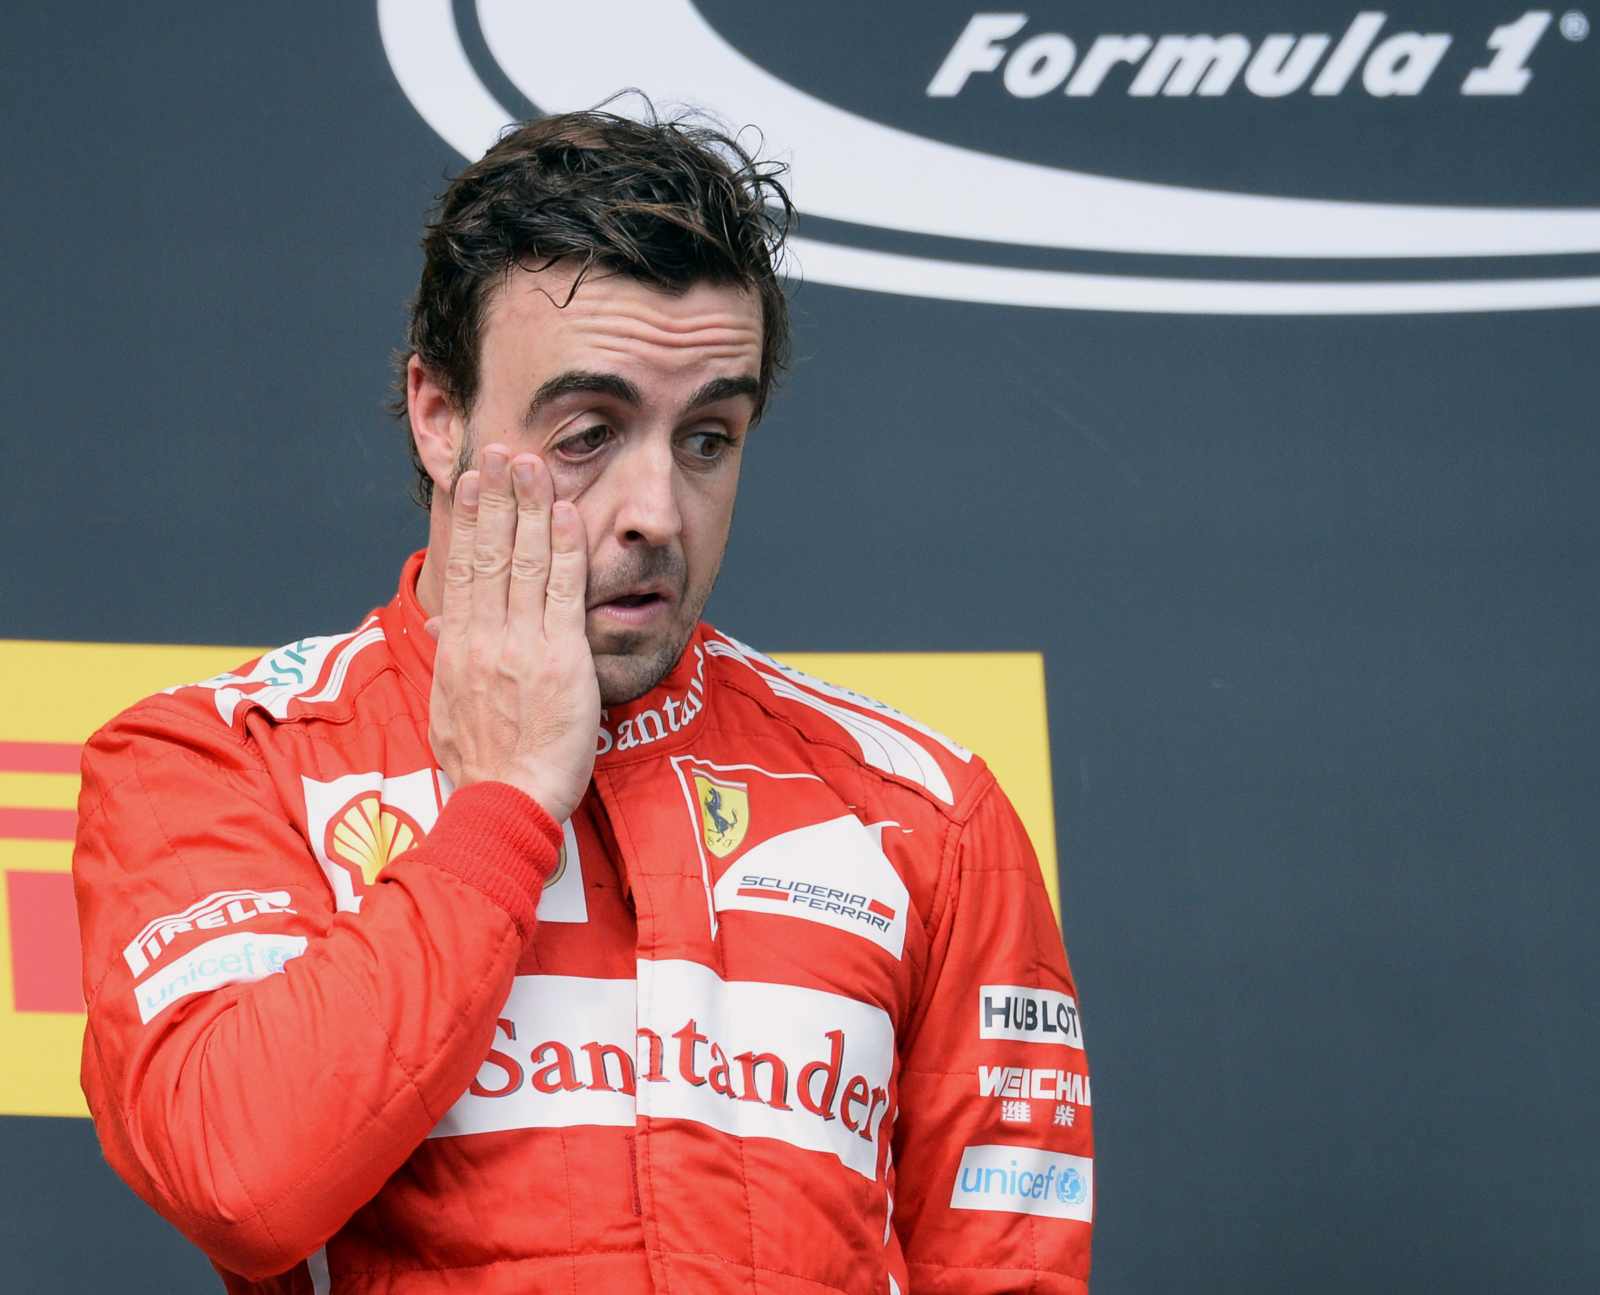 6 - FERNANDO ALONSO ULTRAPASSA MASSA - Durante o campeonato de 2010, Alonso se viu em uma situação desafiadora em Hockenheim ao não conseguir ultrapassar seu companheiro de equipe Massa. Frustrado, Alonso expressou sua insatisfação pelo rádio da equipe, considerando a situação “ridícula”. A equipe demorou algumas voltas para responder, mas finalmente emitiu a agora famosa ordem: "Fernando é mais rápido que você". Massa, marcando o aniversário de um ano de seu grave acidente durante os treinos para o GP da Hungria de 2009, permitiu que Alonso passasse, resultando na vitória do espanhol na corrida. No entanto, esta decisão foi recebida com desaprovação pelos fãs e revelou-se particularmente difícil para Massa.